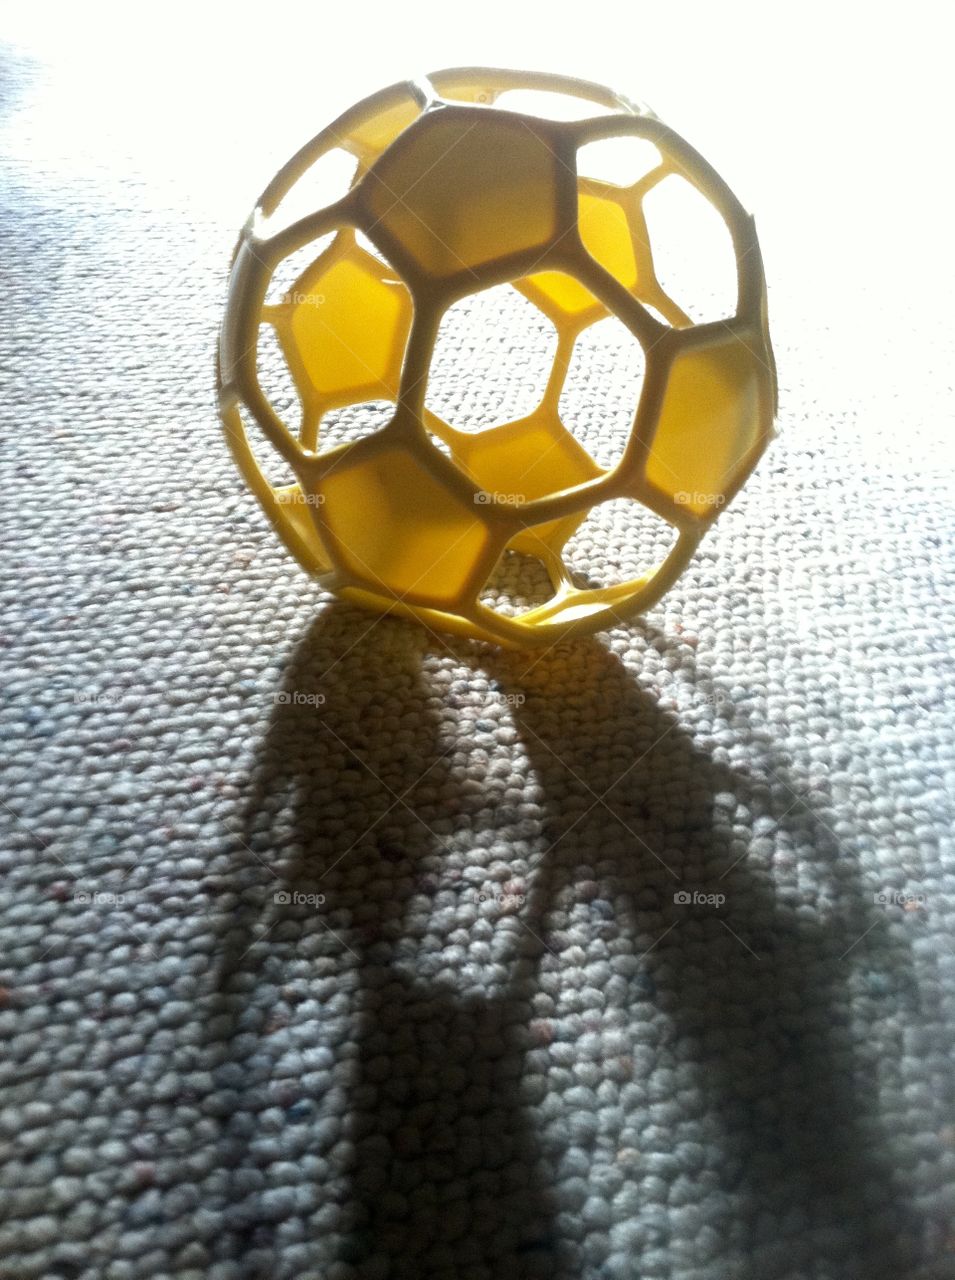 Toy hexagonal ball